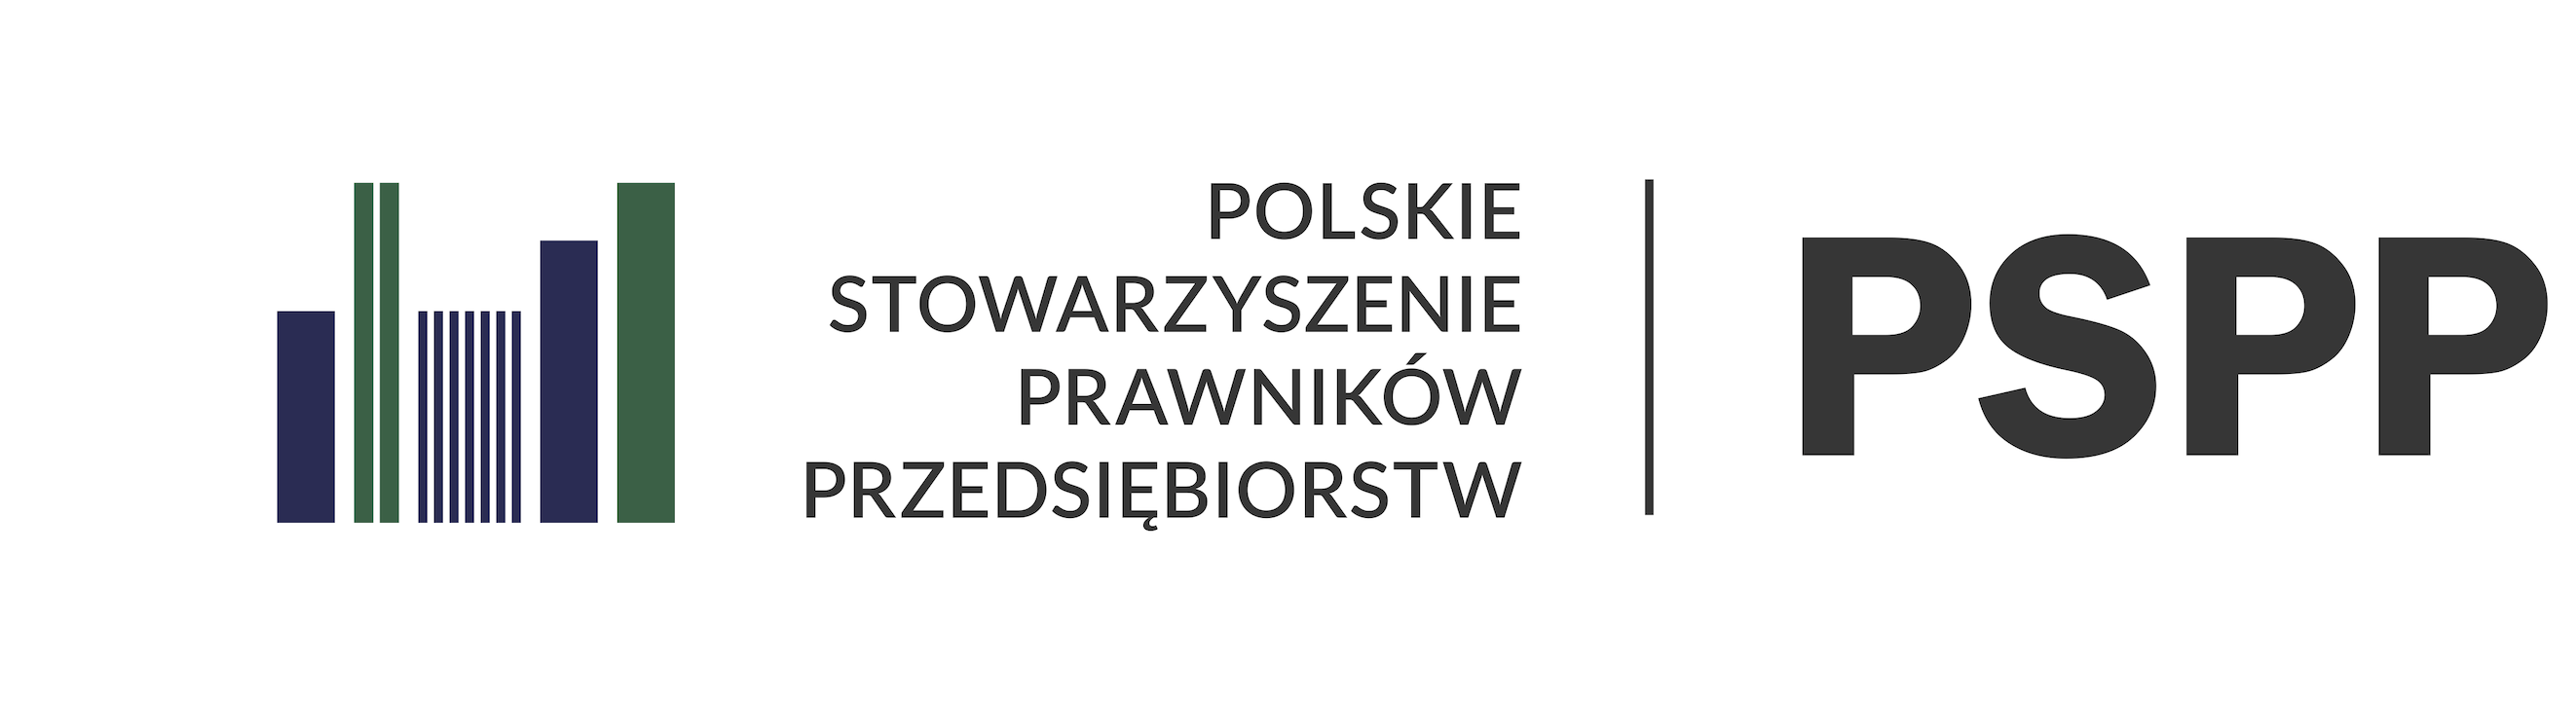 PSPP logo